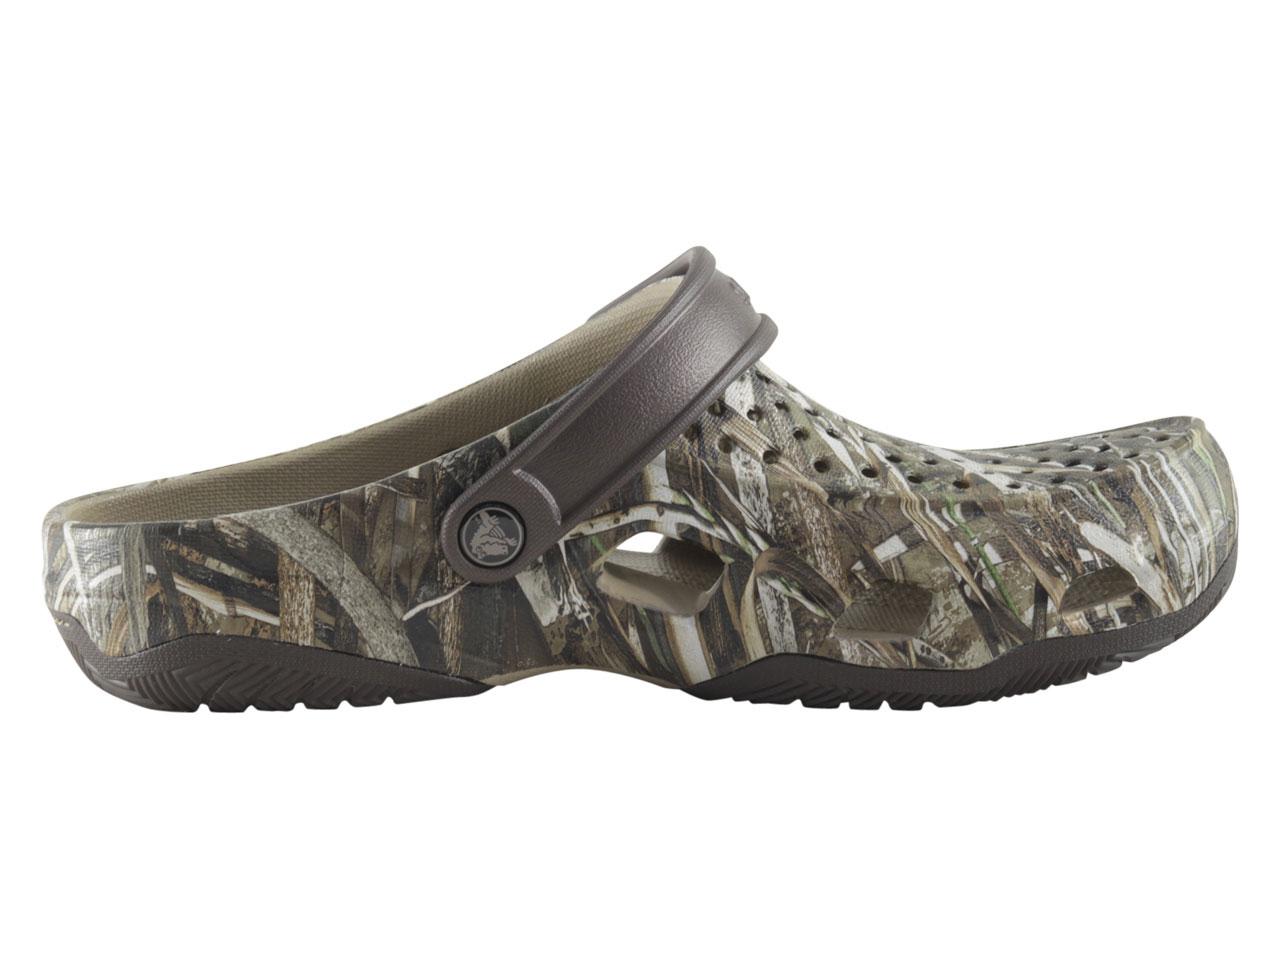 Crocs Men's Swiftwater Deck Realtree Max-5 Clogs Sandals Shoes | JoyLot.com